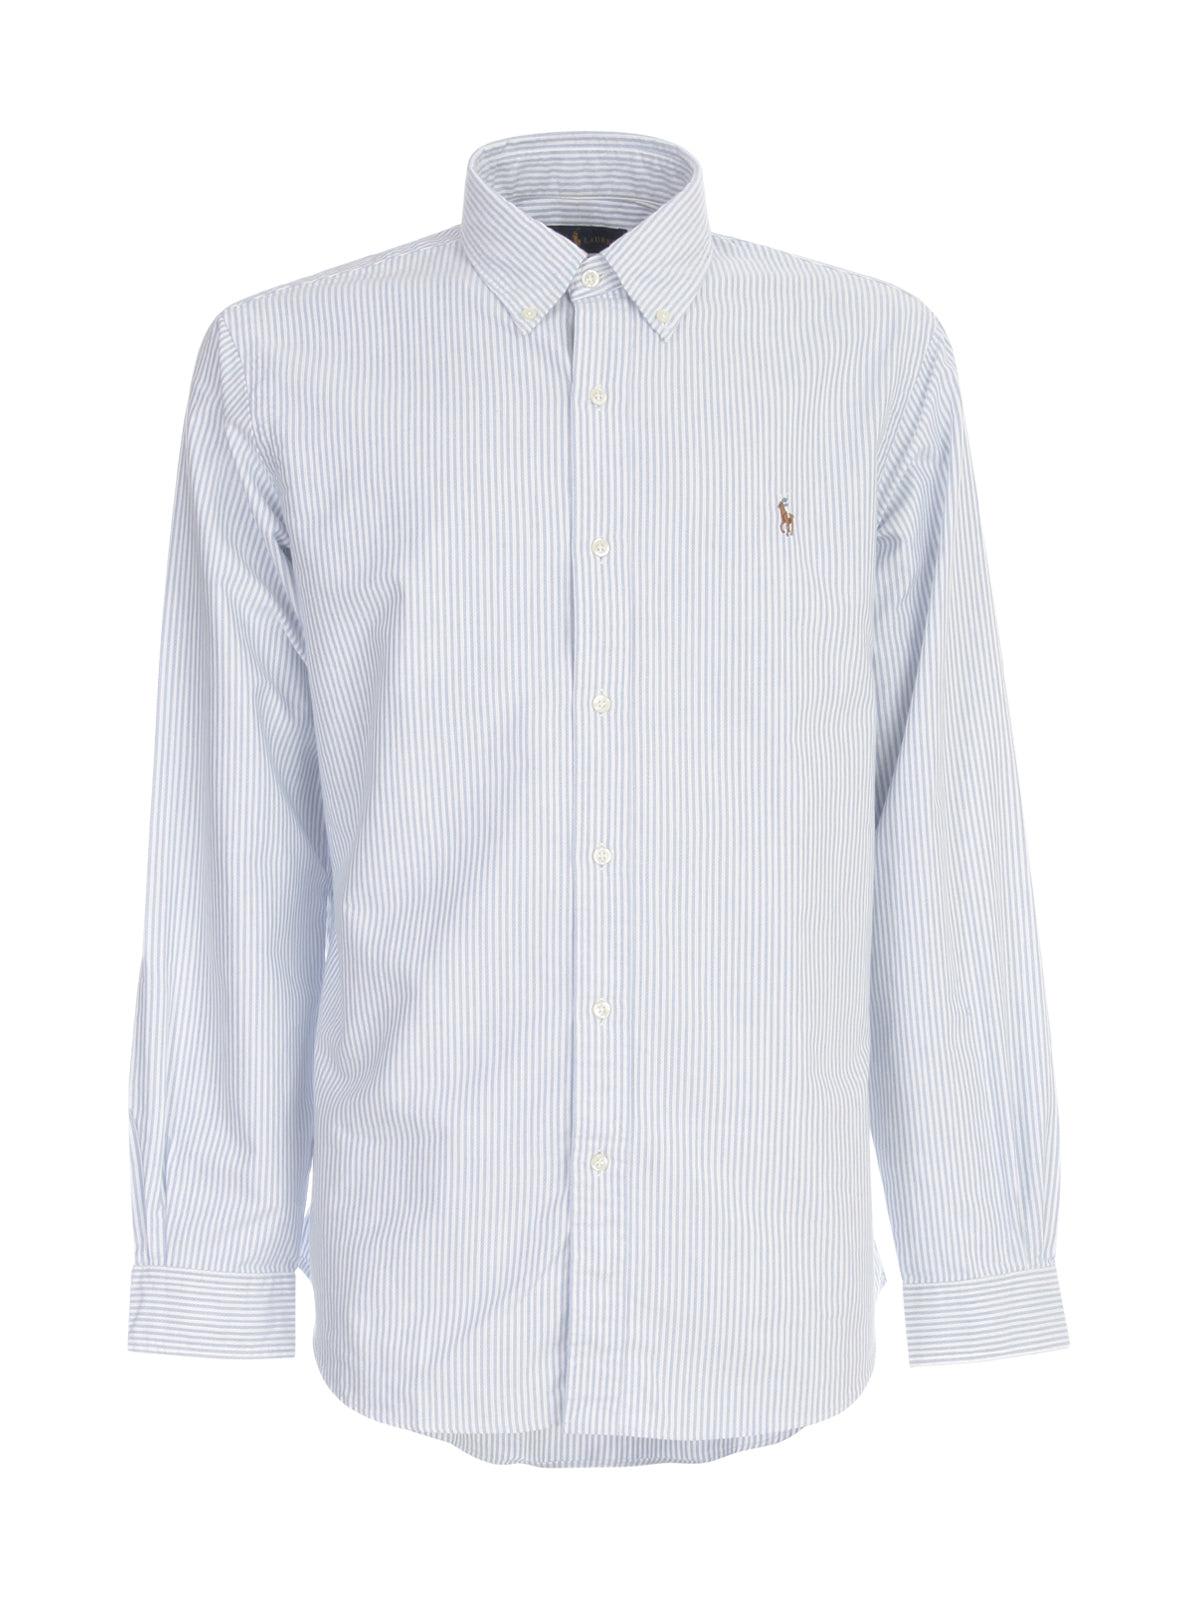 Ralph Lauren Striped Oxford Shirt